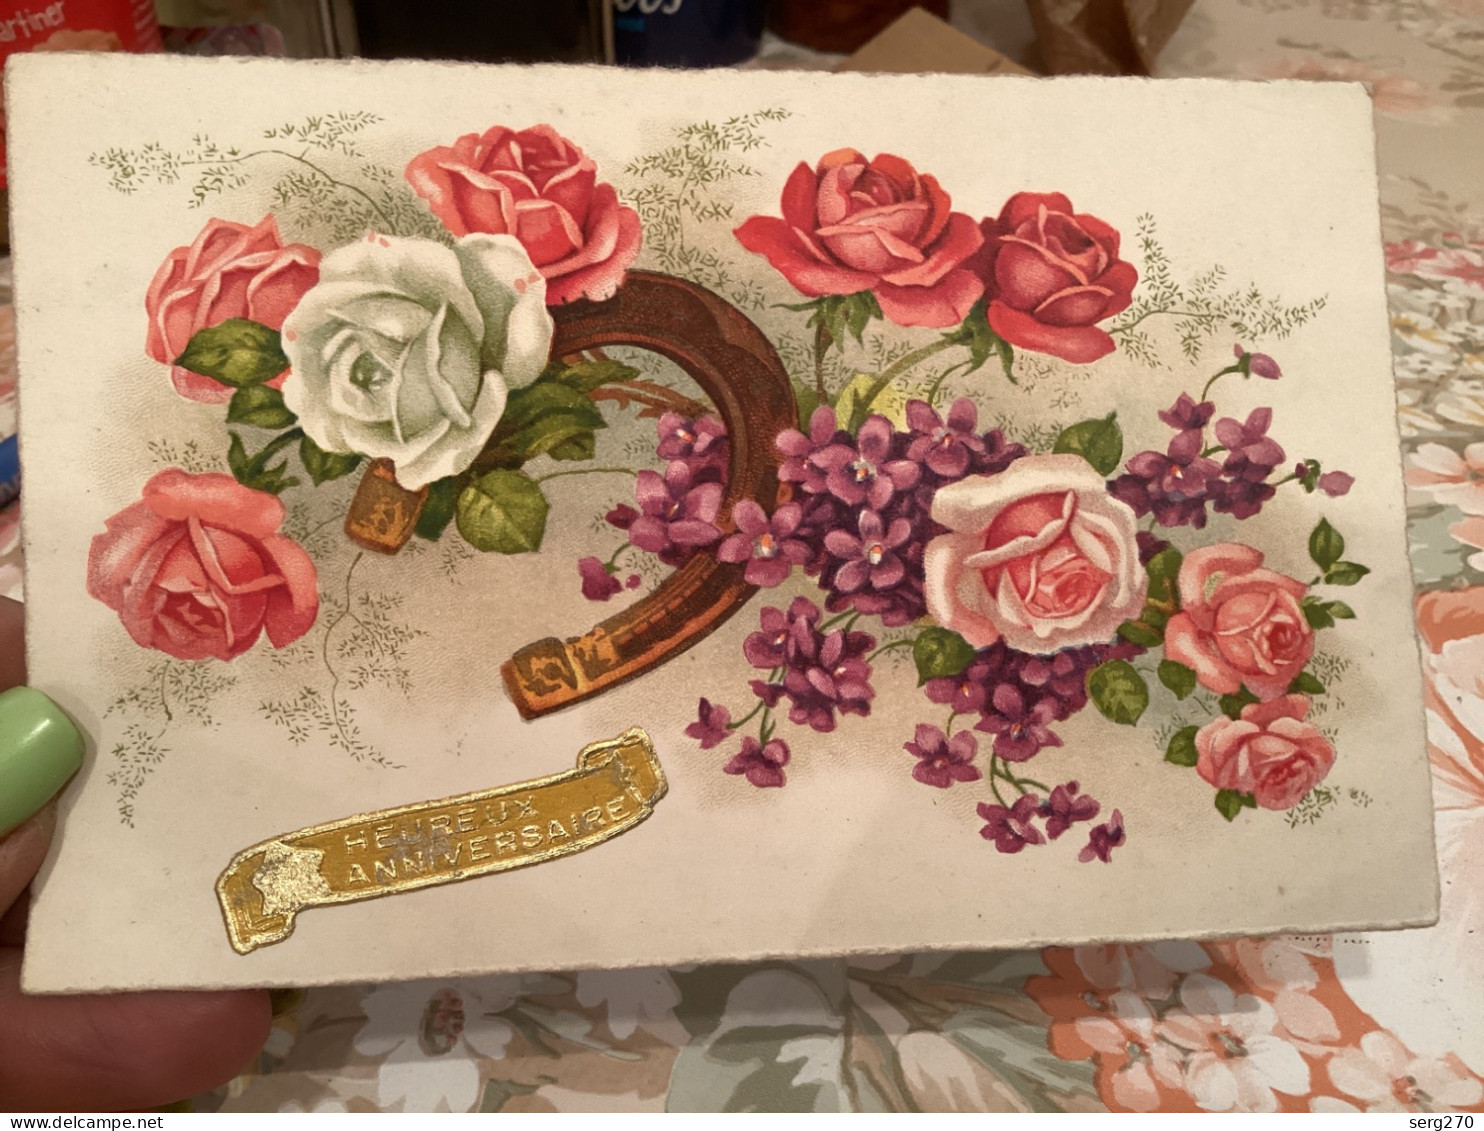 Heureux Anniversaire Fer à Cheval Fleurs Rose - Bloemen